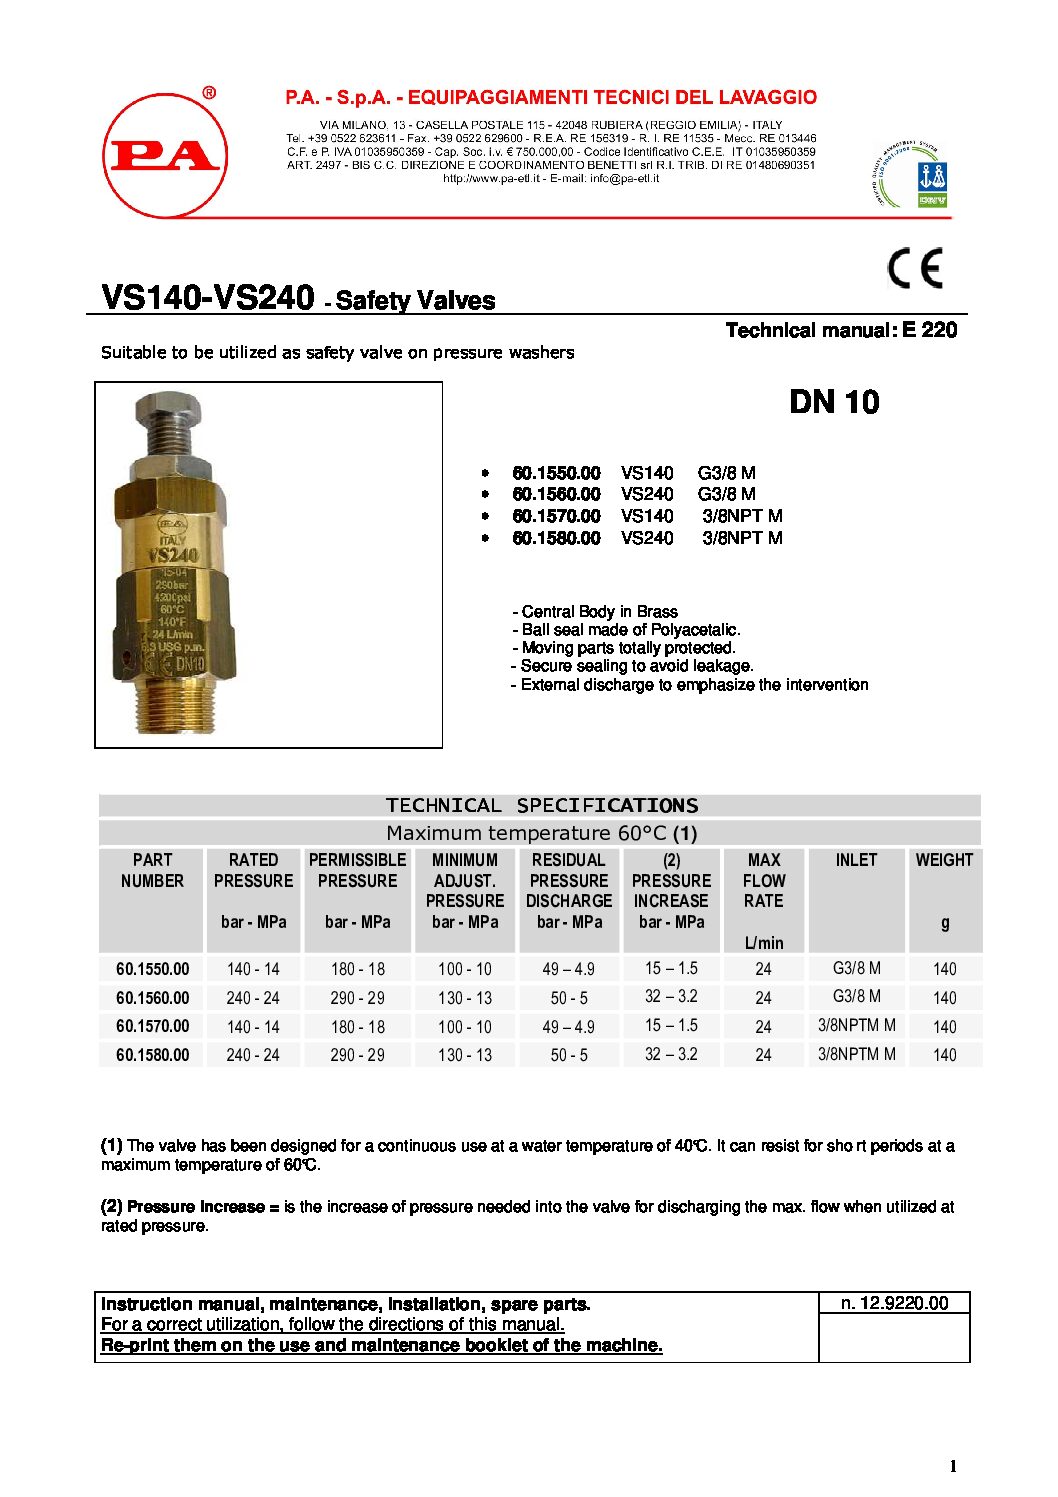 PA VS240 safety valve technical manual